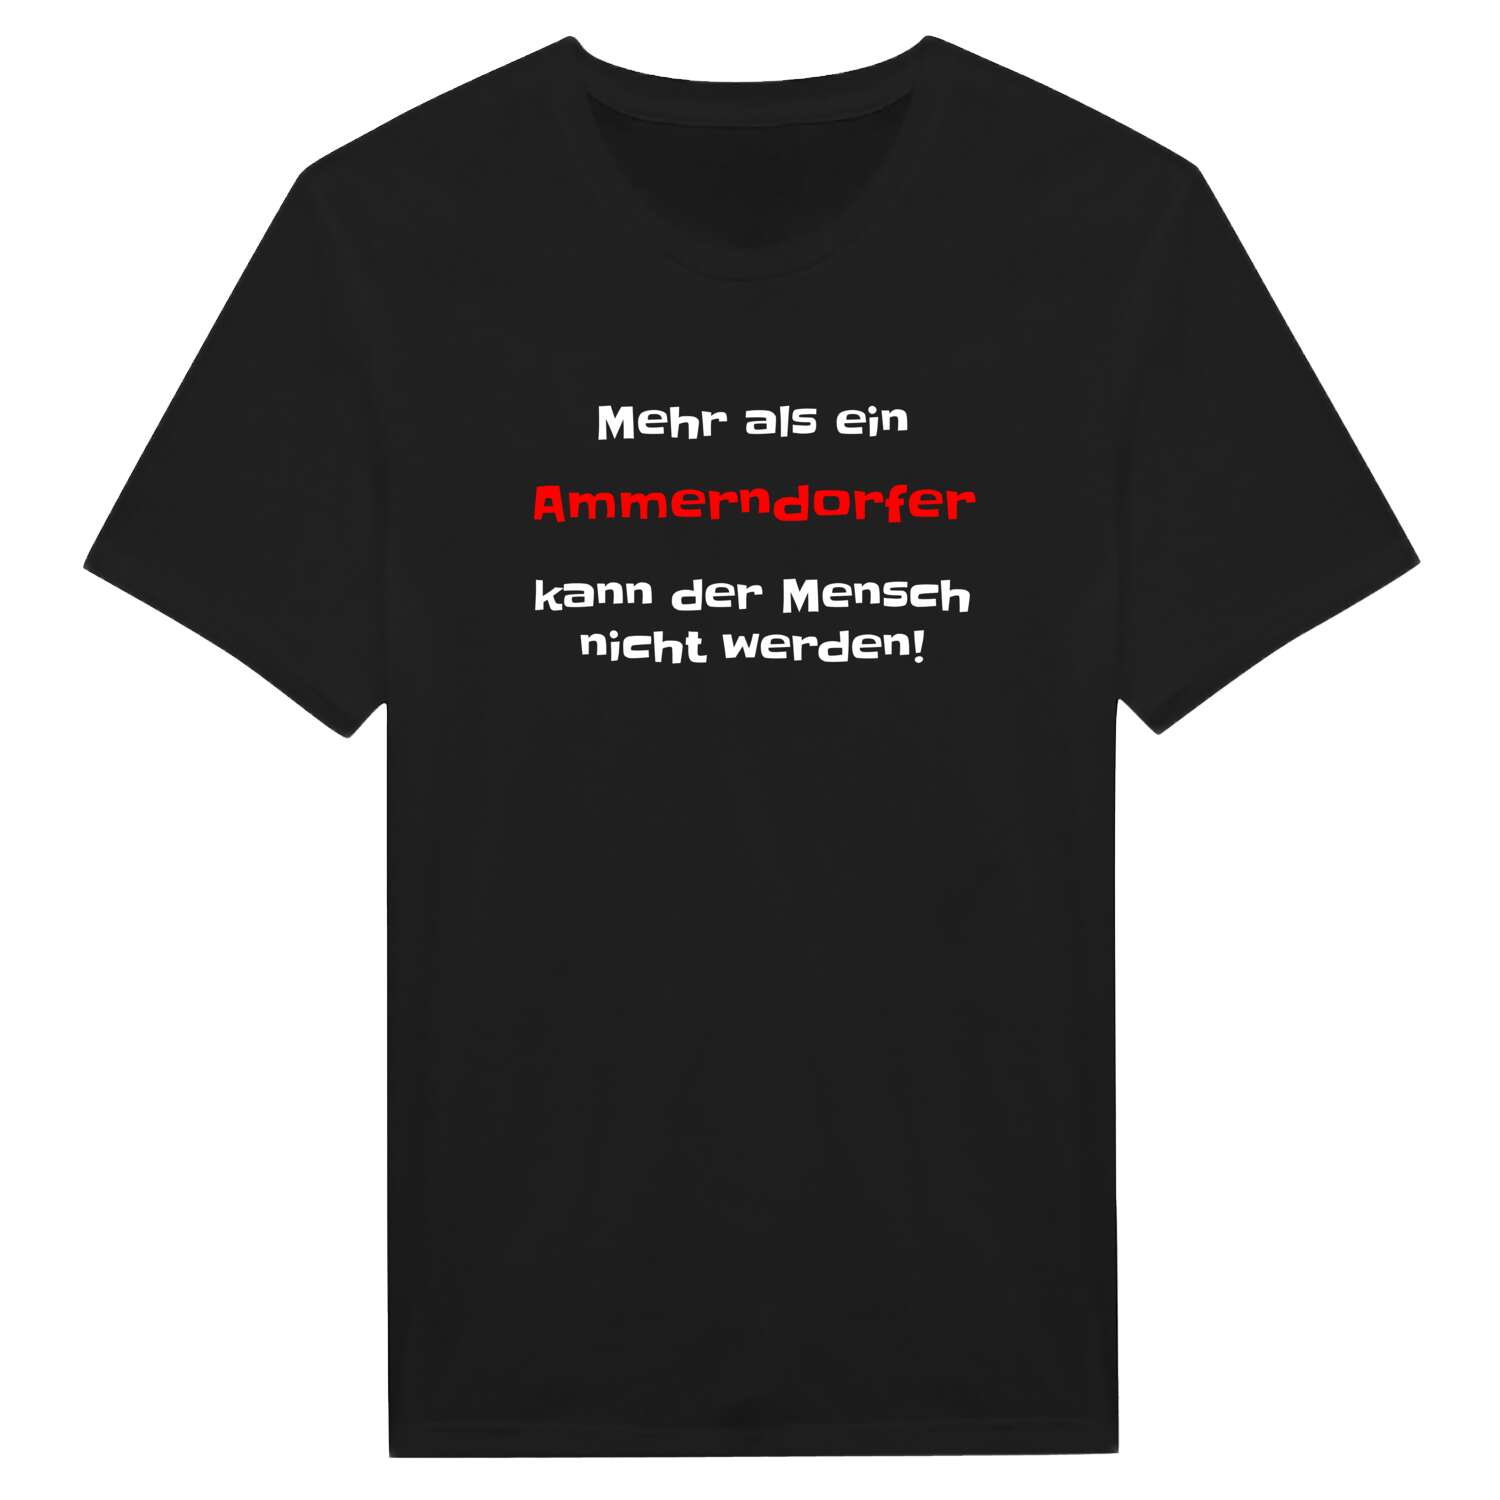 Ammerndorf T-Shirt »Mehr als ein«